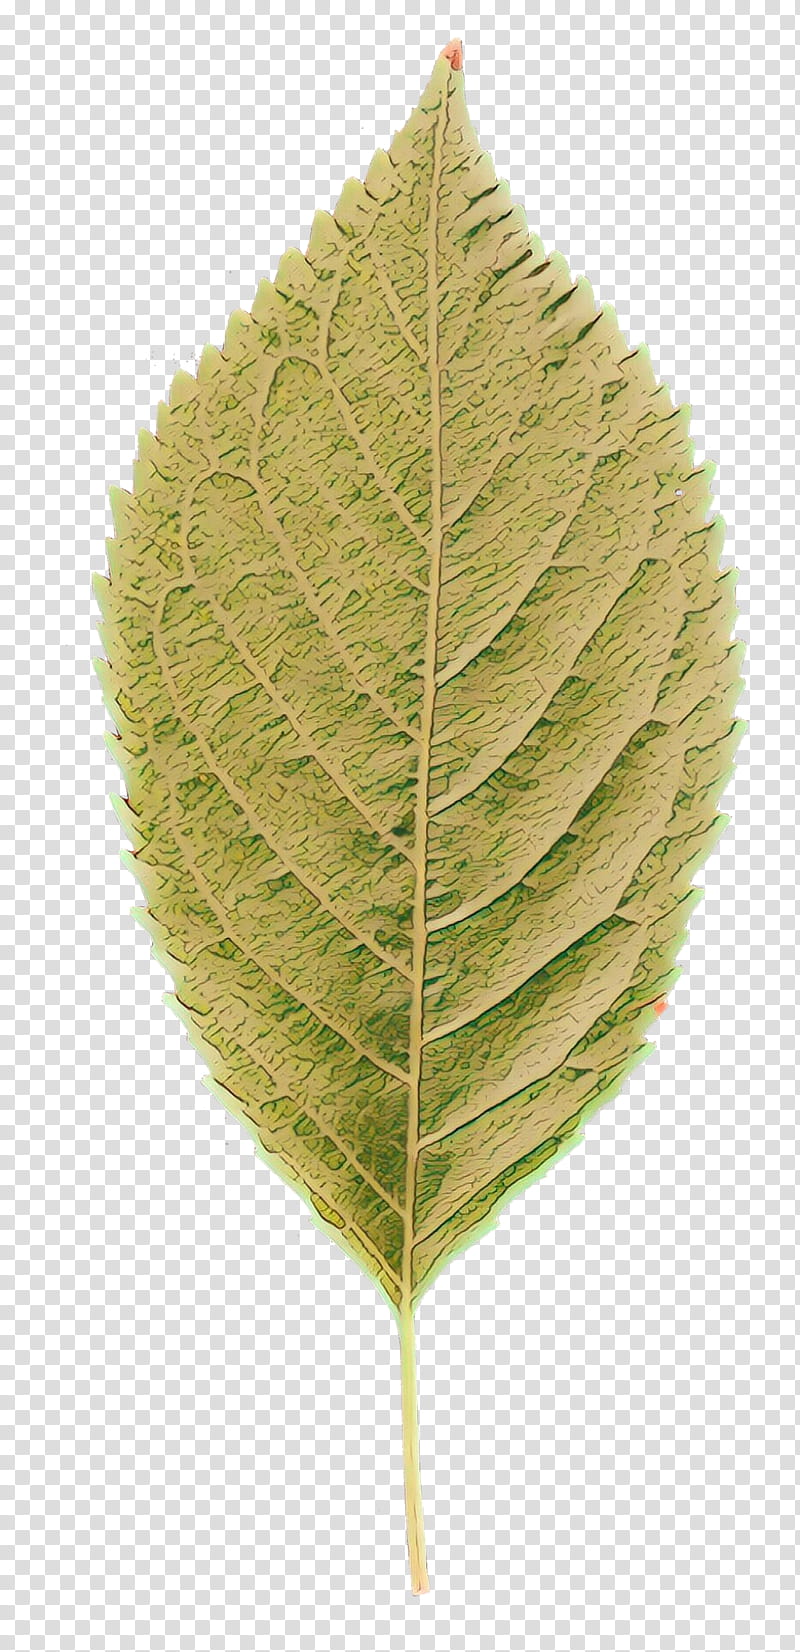 Birch Tree, Leaf, Plant Stem, Plants, Flower, Swamp Birch, Grey Alder, Siberian Elm transparent background PNG clipart